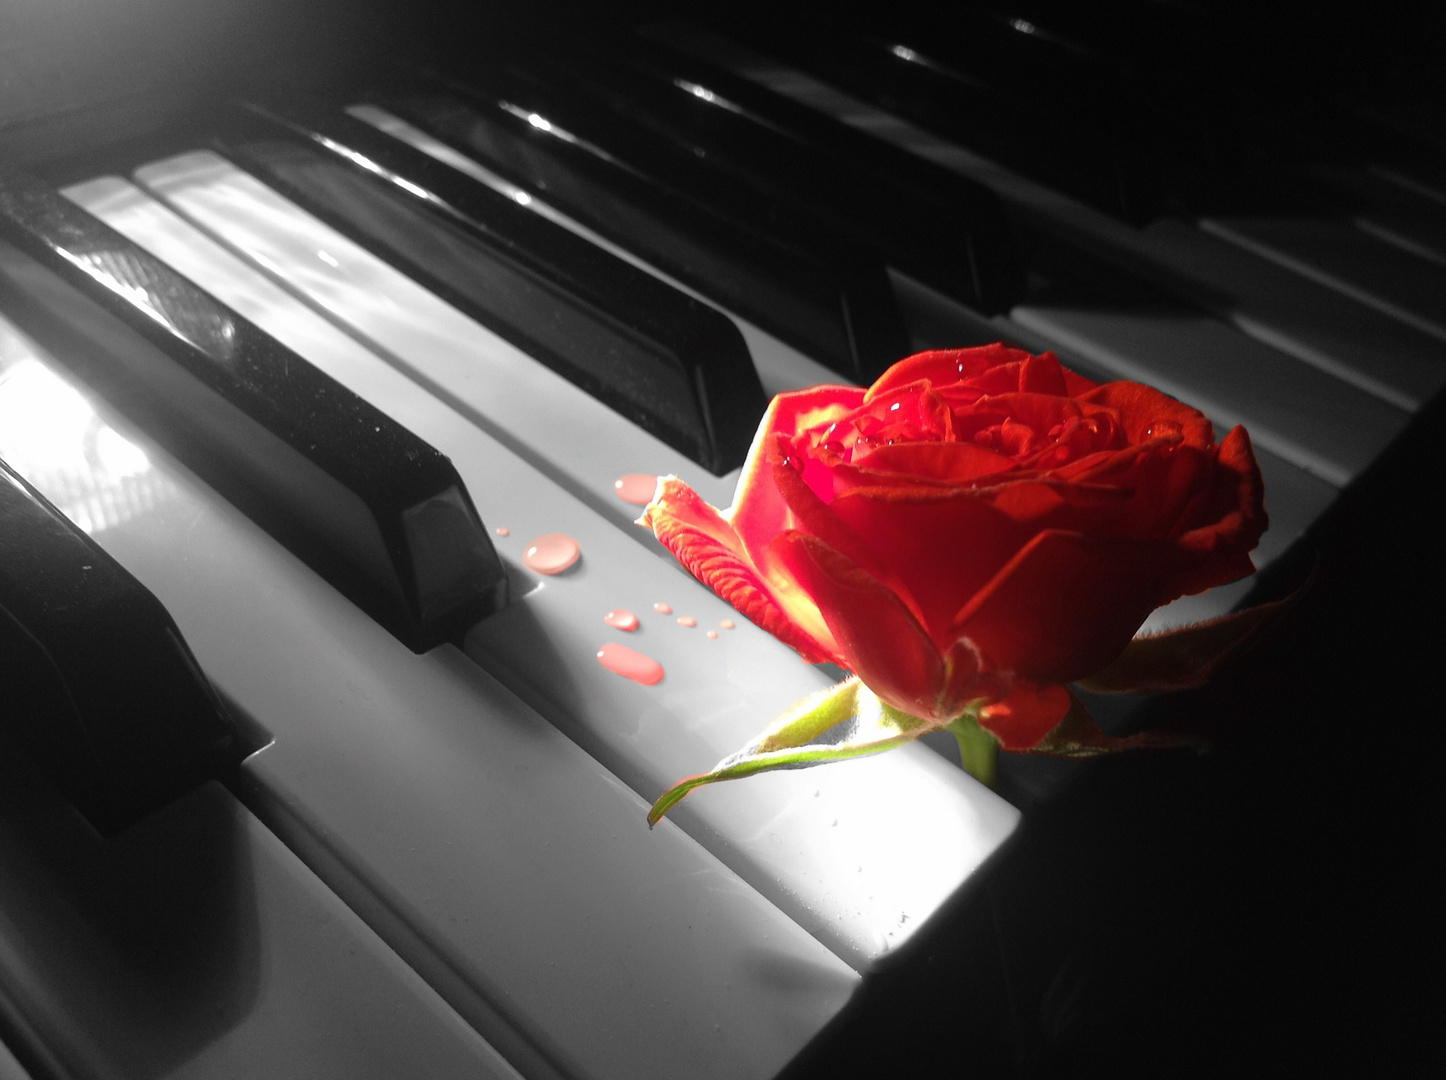 Klavier und rote Rose